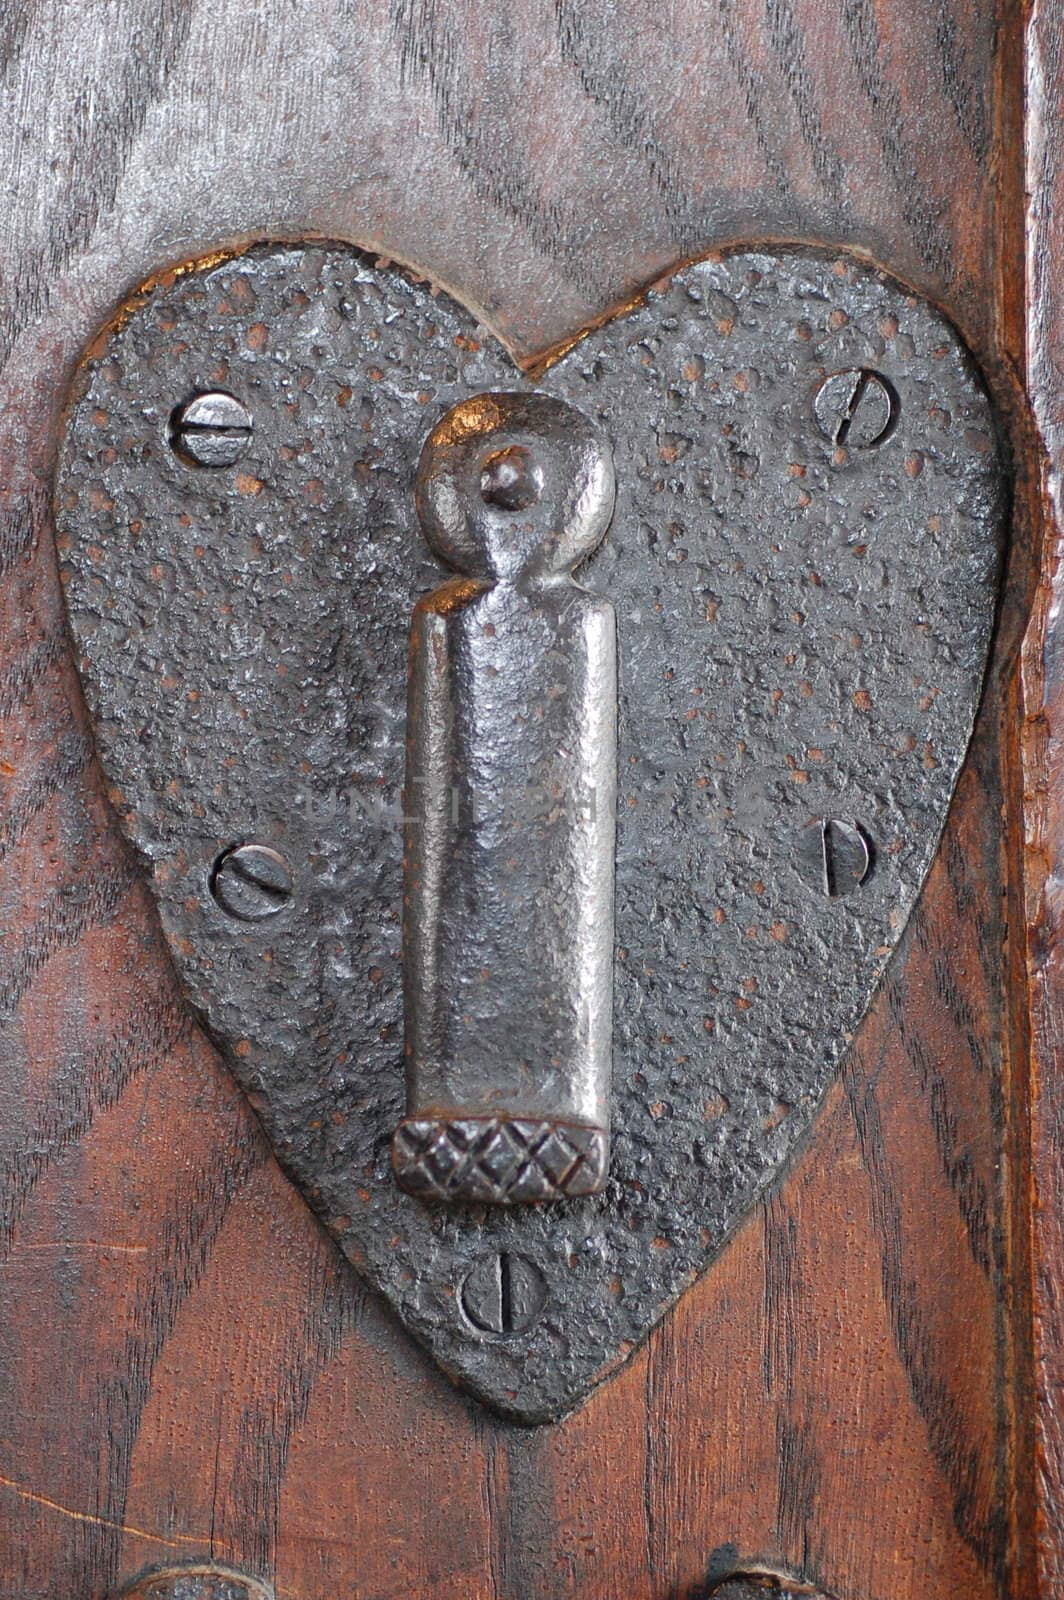 Heart shaped lock in old wooden door.